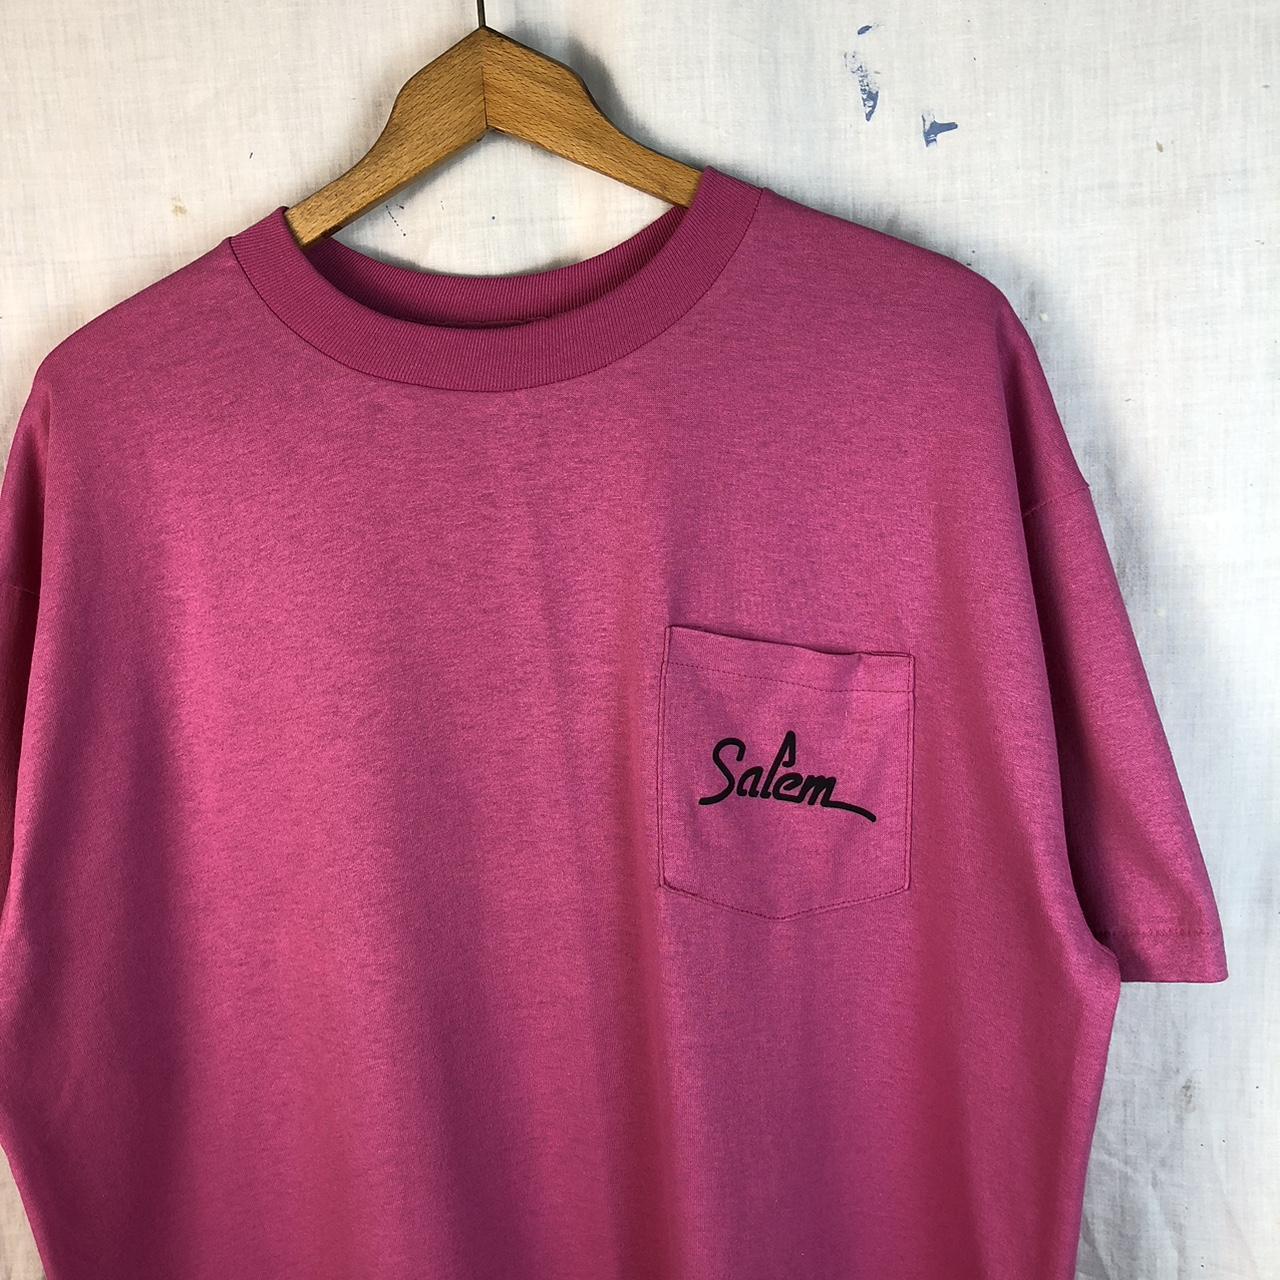 Salem Sportswear Women's T-Shirt - Purple - One Size